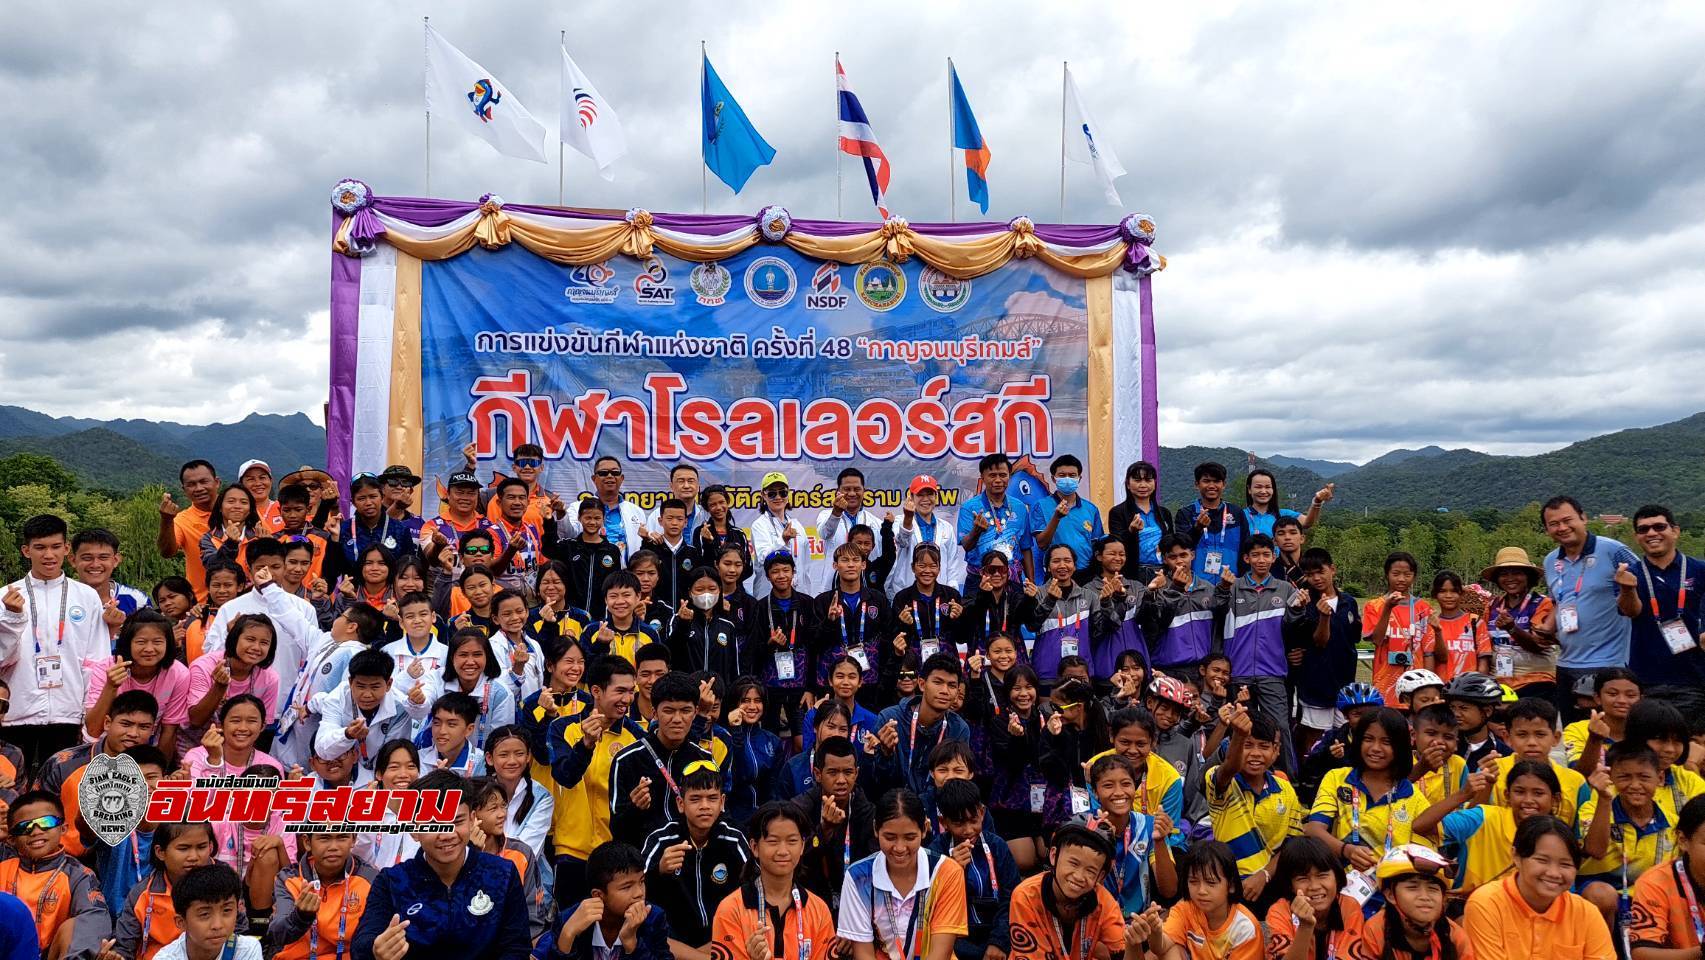 กาญจนบุรี-นายกสมาคมกีฬากาญจน์เปิดการแข่งขัน”กีฬาโรลเลอร์สกี”ณ อุทยานสงครามเก้าทัพ